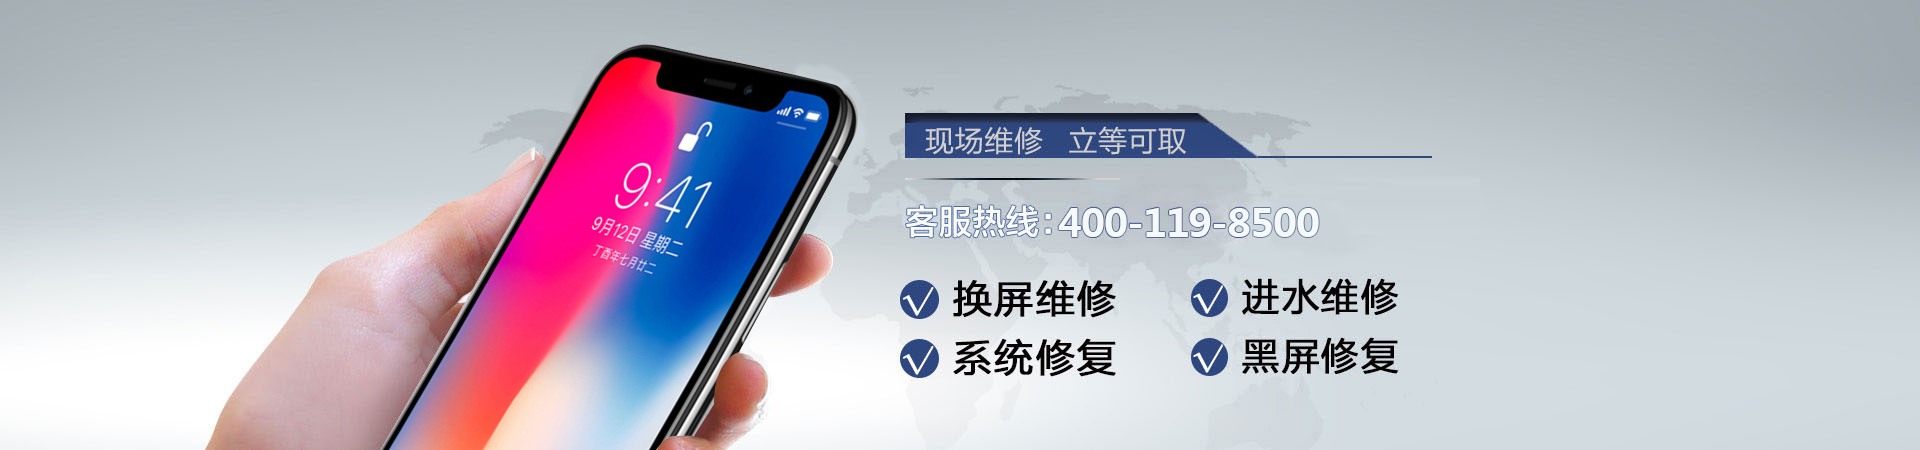 上海苹果手机维修服务地址查询